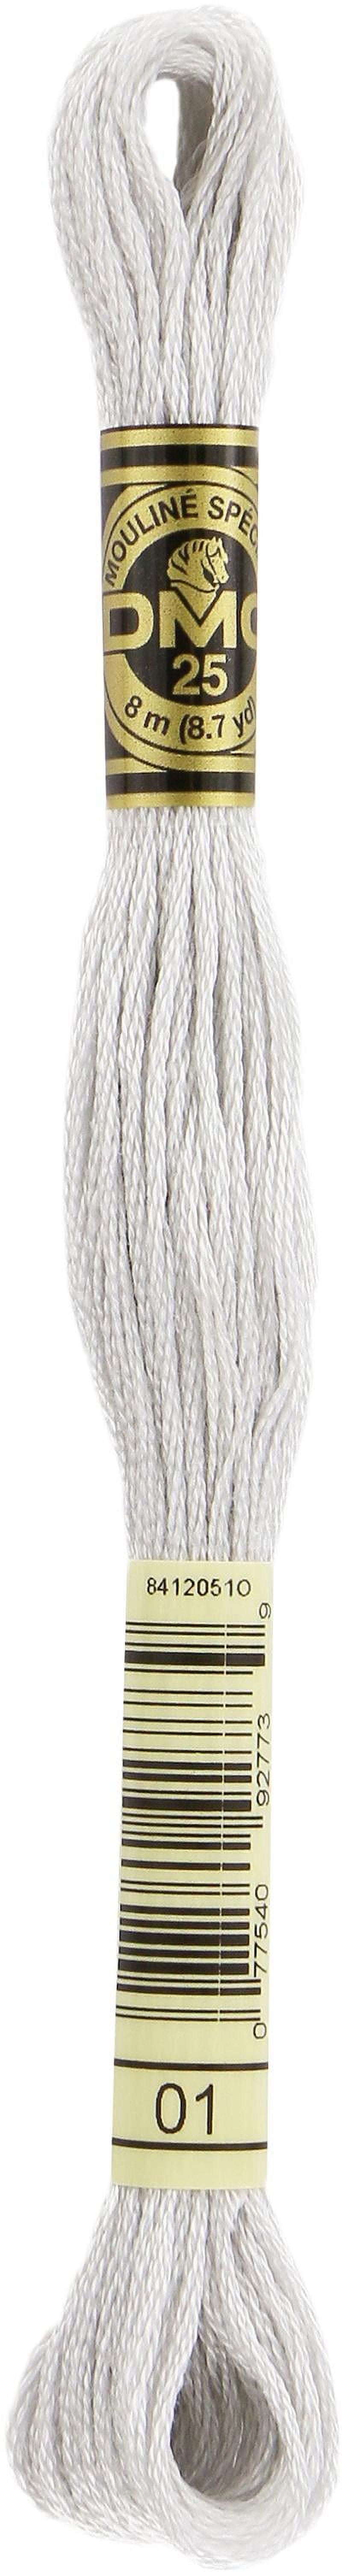 DMC # 01 White Tin Floss / Thread